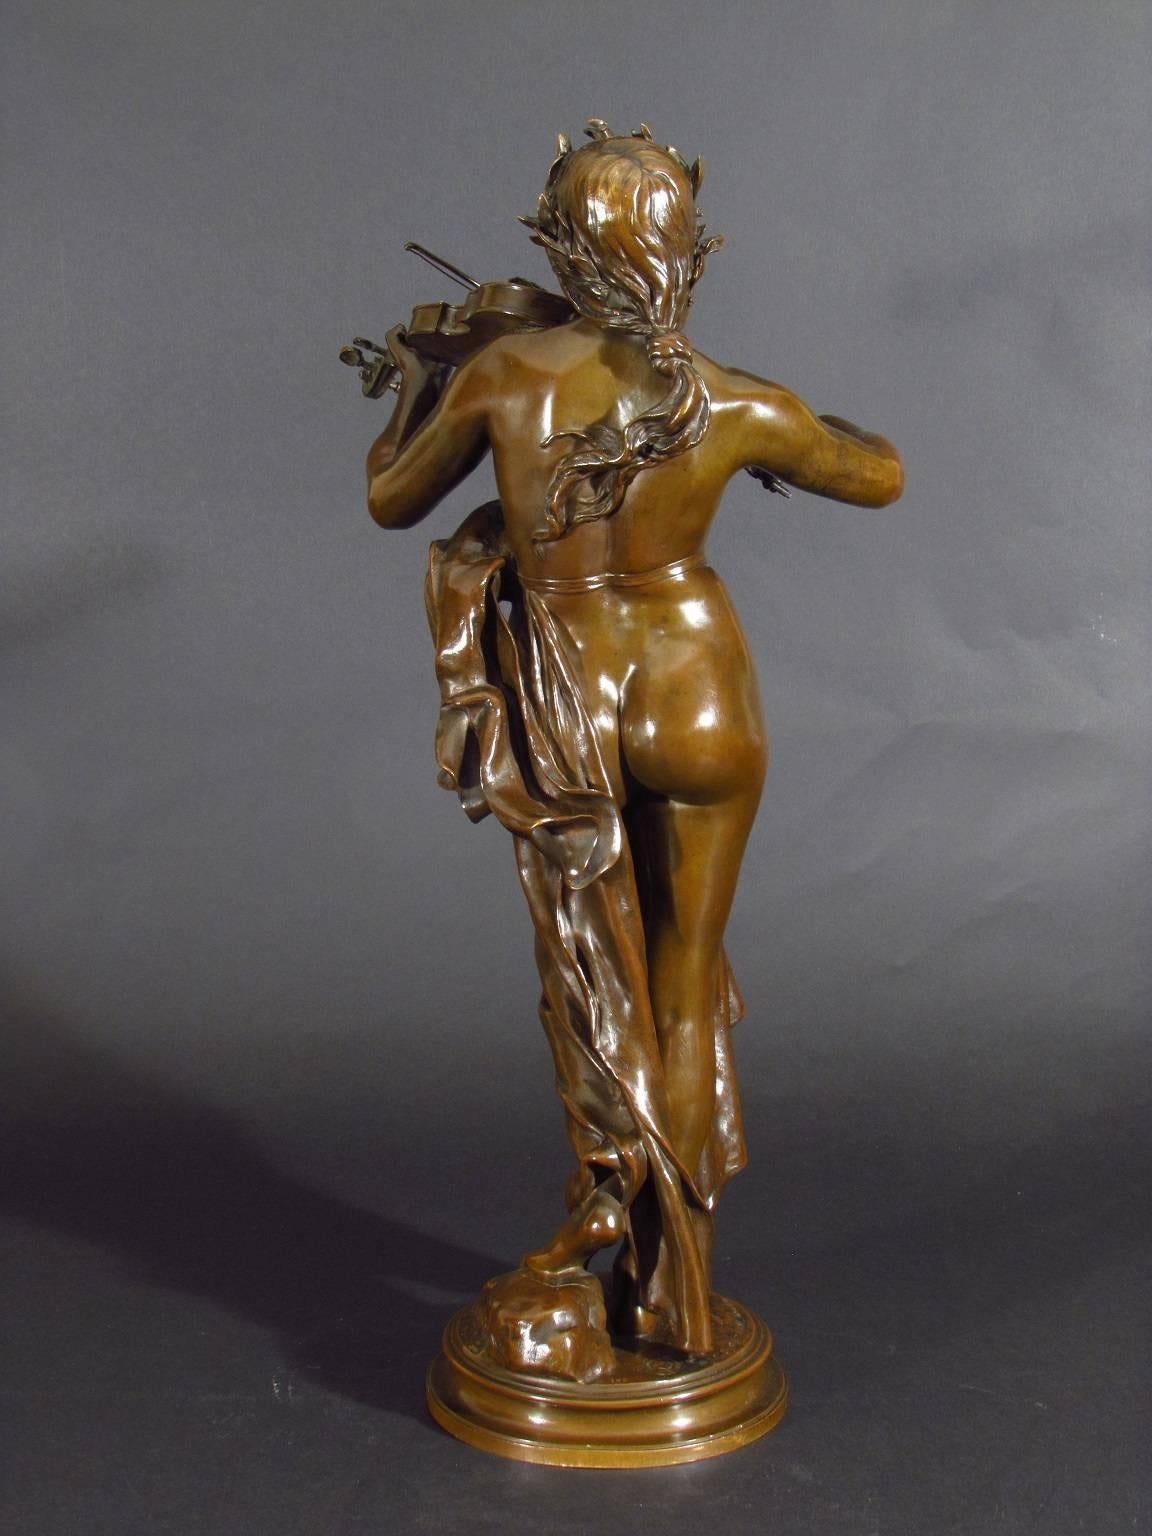 La Musique - Gold Figurative Sculpture by Eugène Delaplanche